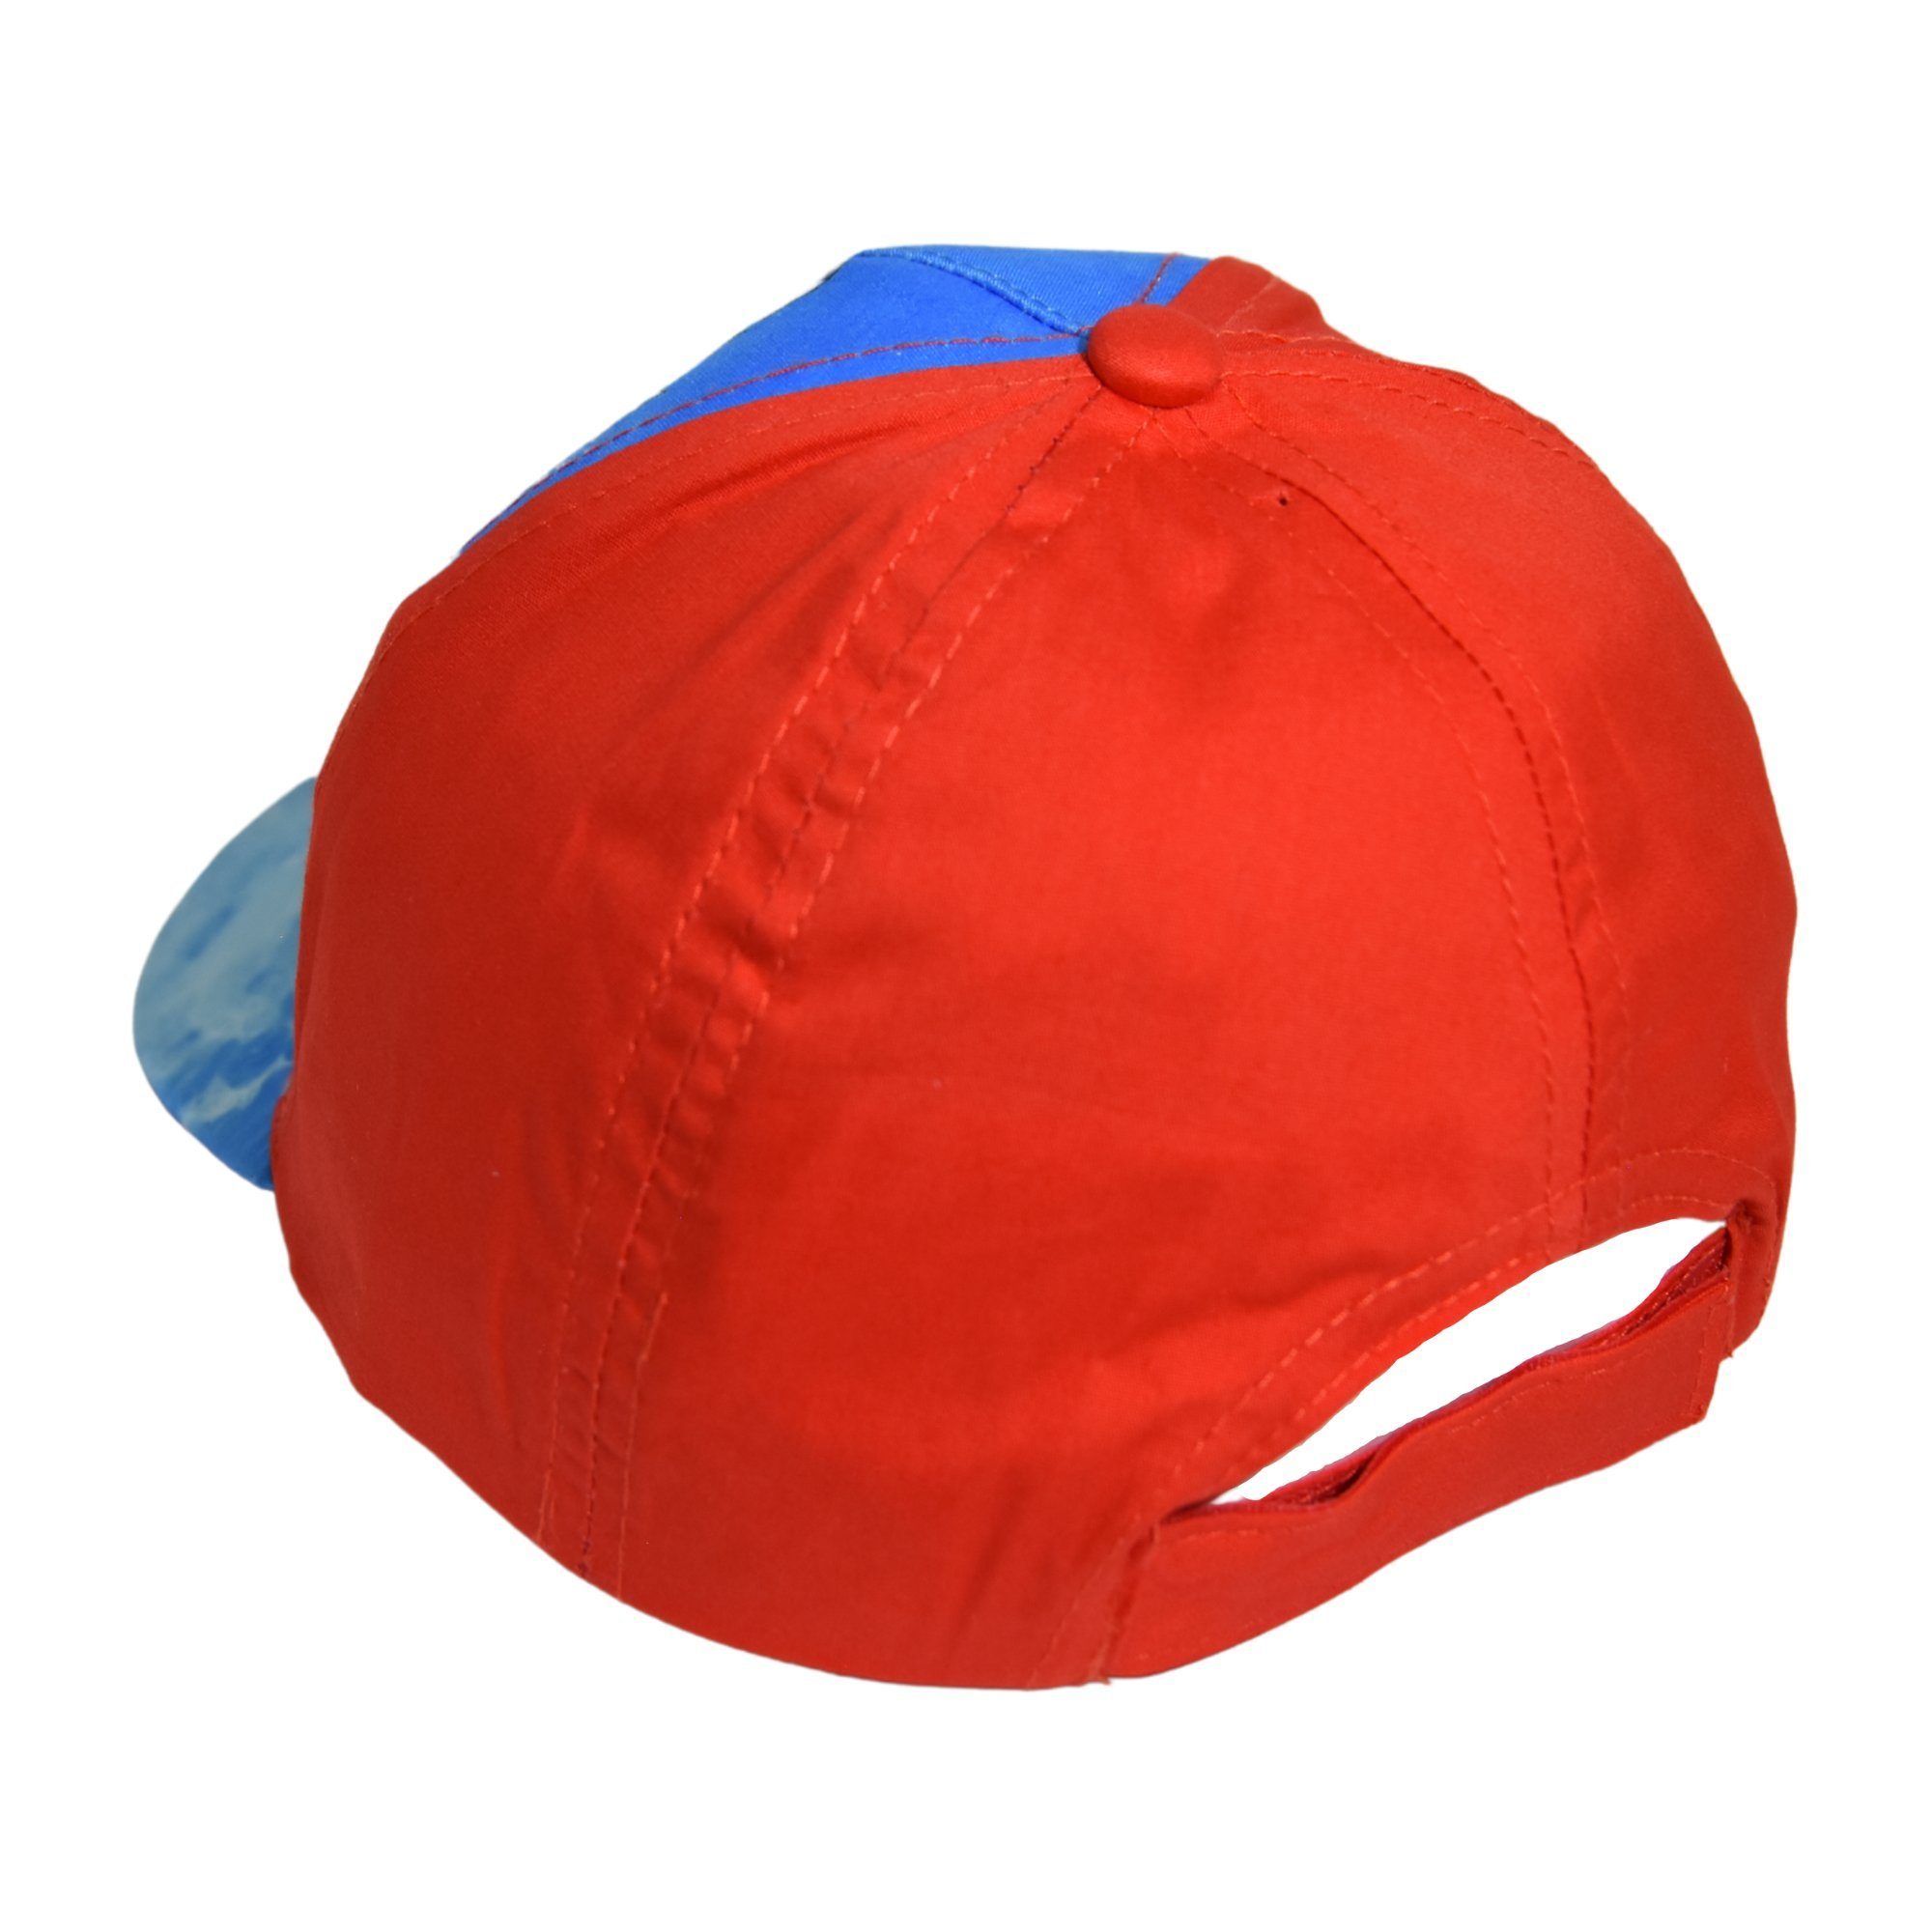 The AVENGERS 52-54 Cap Schutz mit Sommerkappe Rot 30+ Größe Baseball UV cm